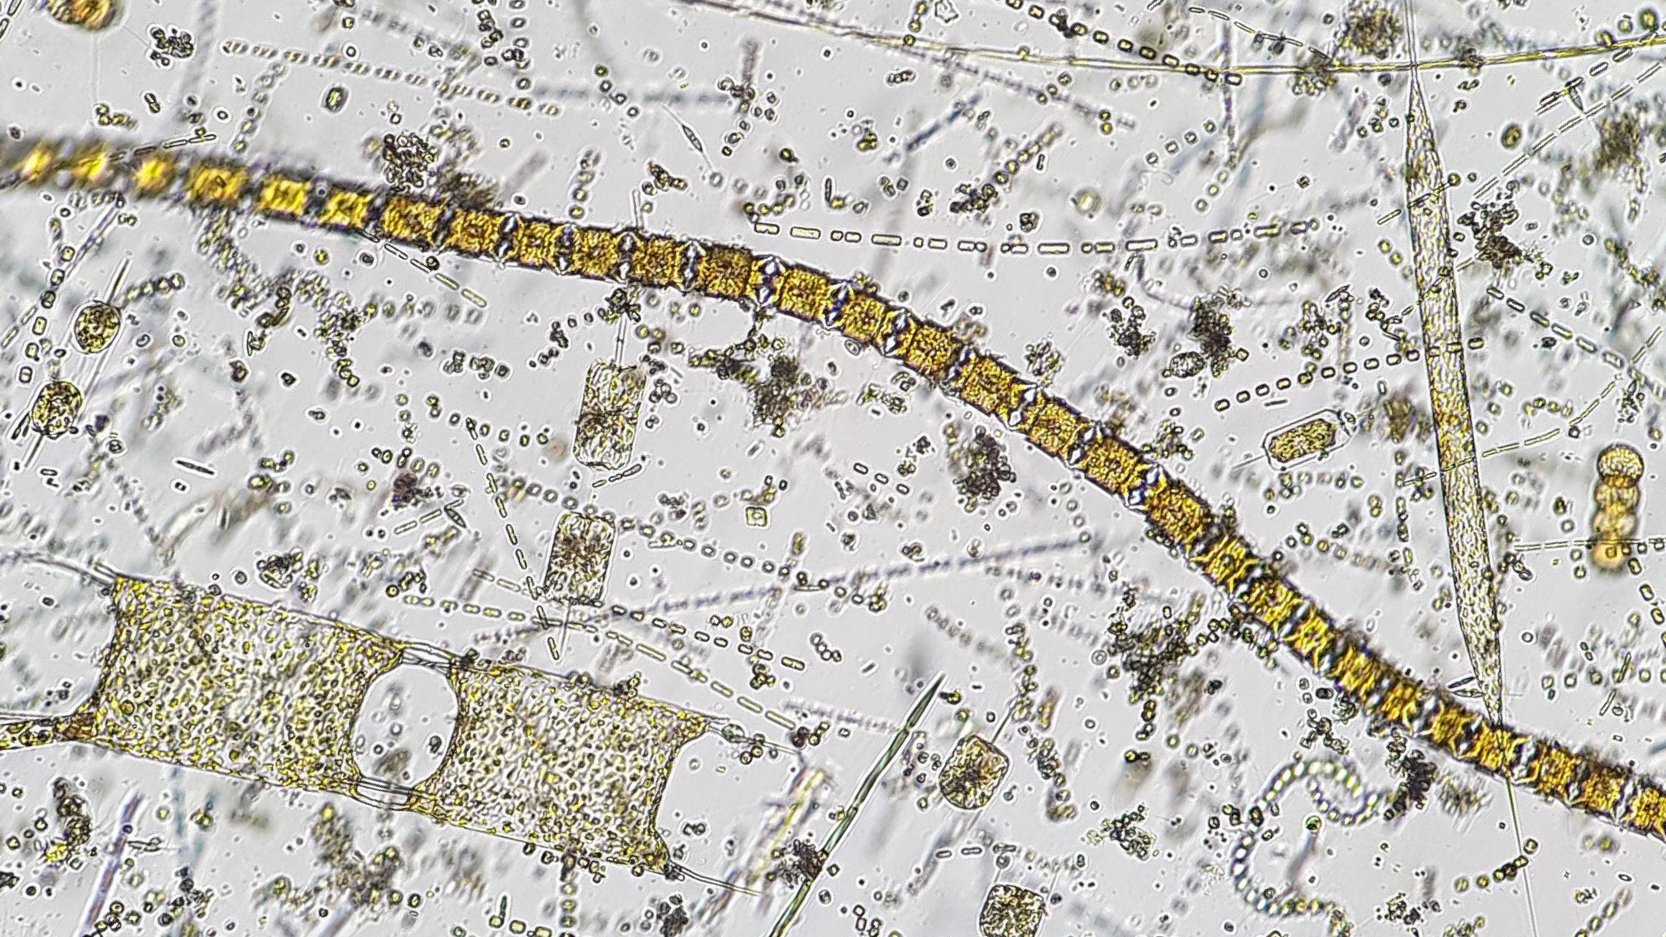 Die Zellgröße vieler Diatomeen, ähnlich denen auf diesem Bild, hat sich im Wattenmeer in den vergangenen Jahren deutlich verringert [Bild: Universität Oldenburg/Patrick Thomas].